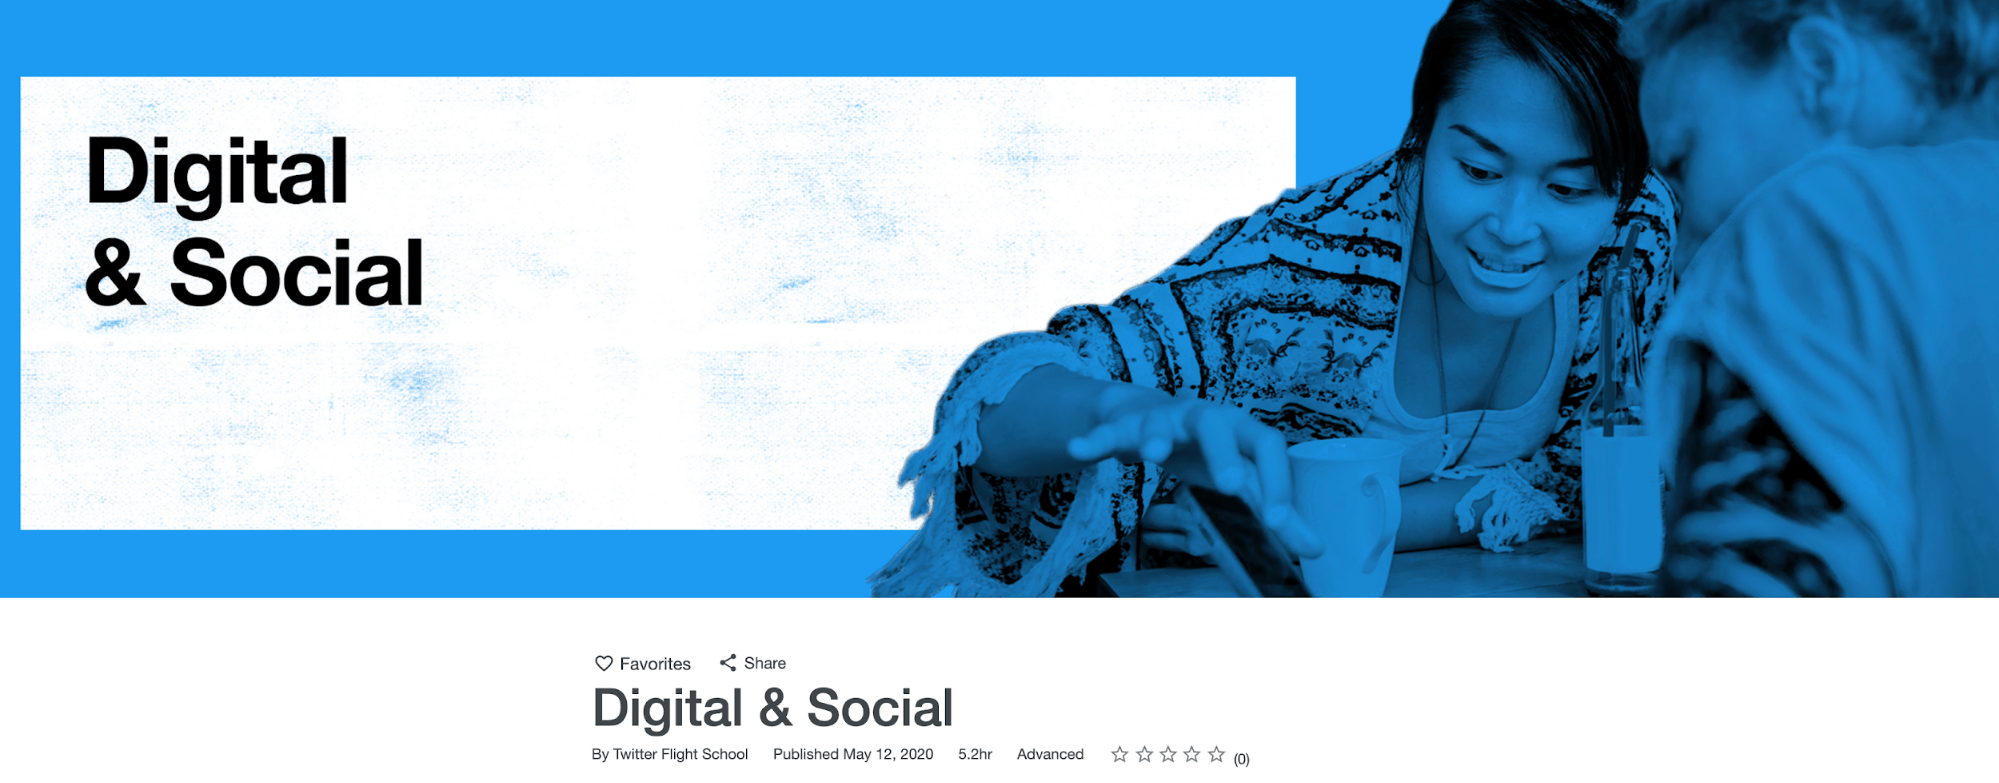 Digital & Social